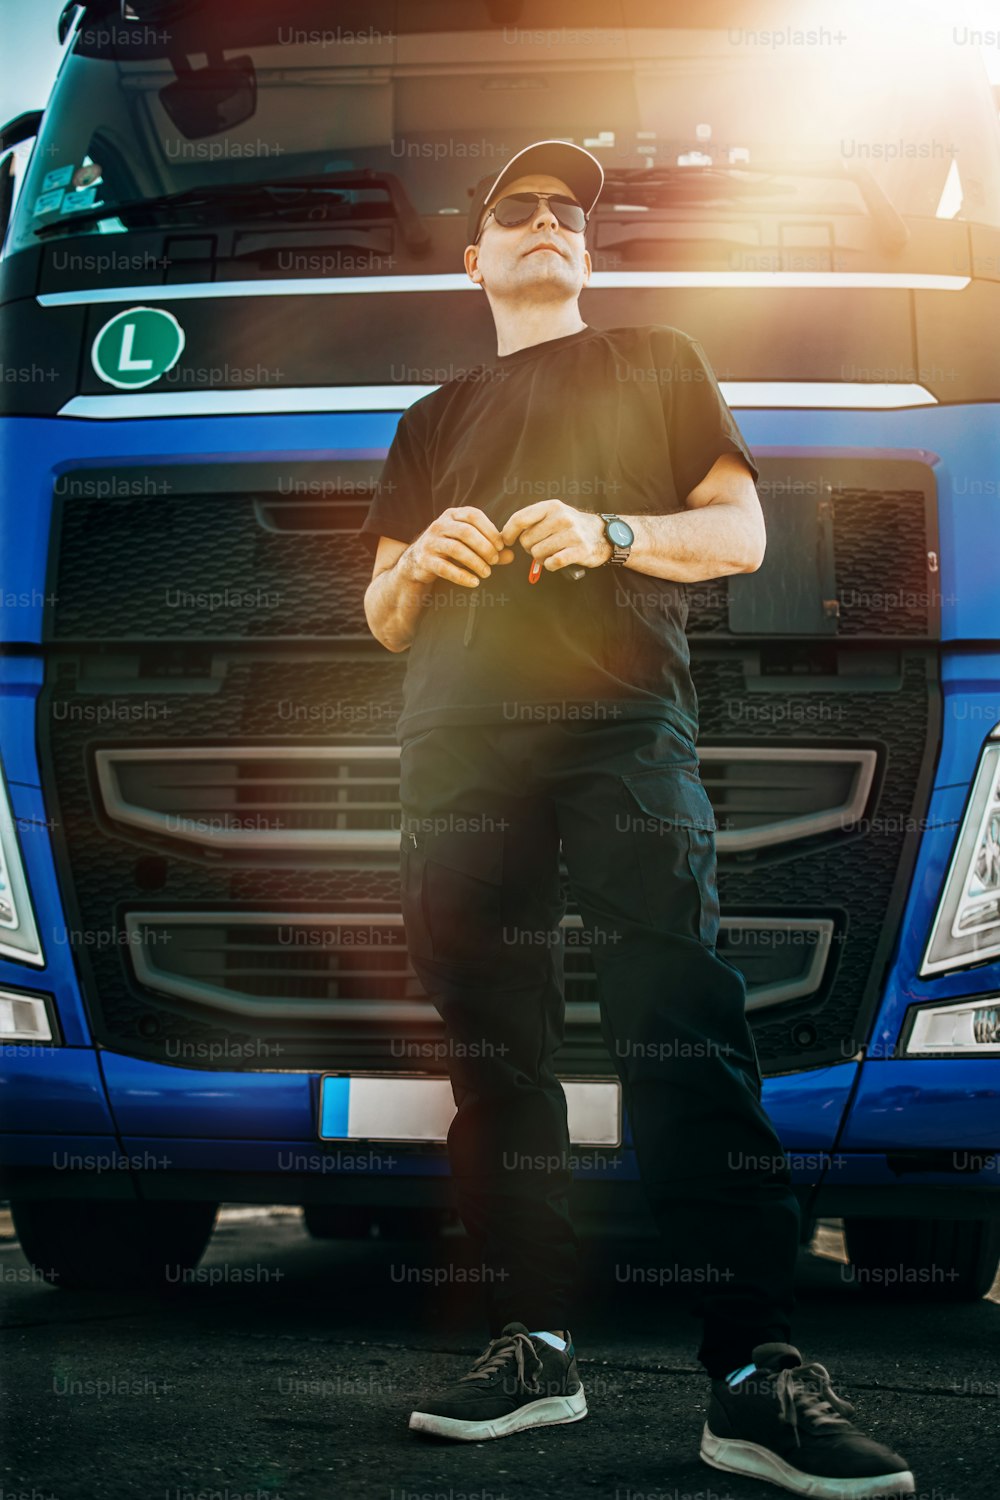 모자와 선글라스를 쓴 전문 트럭 운전사가 크고 현대적인 트럭 함대 앞에 자신 있게 서 있습니다. 밝고 화창한 날. 사람과 교통 개념.